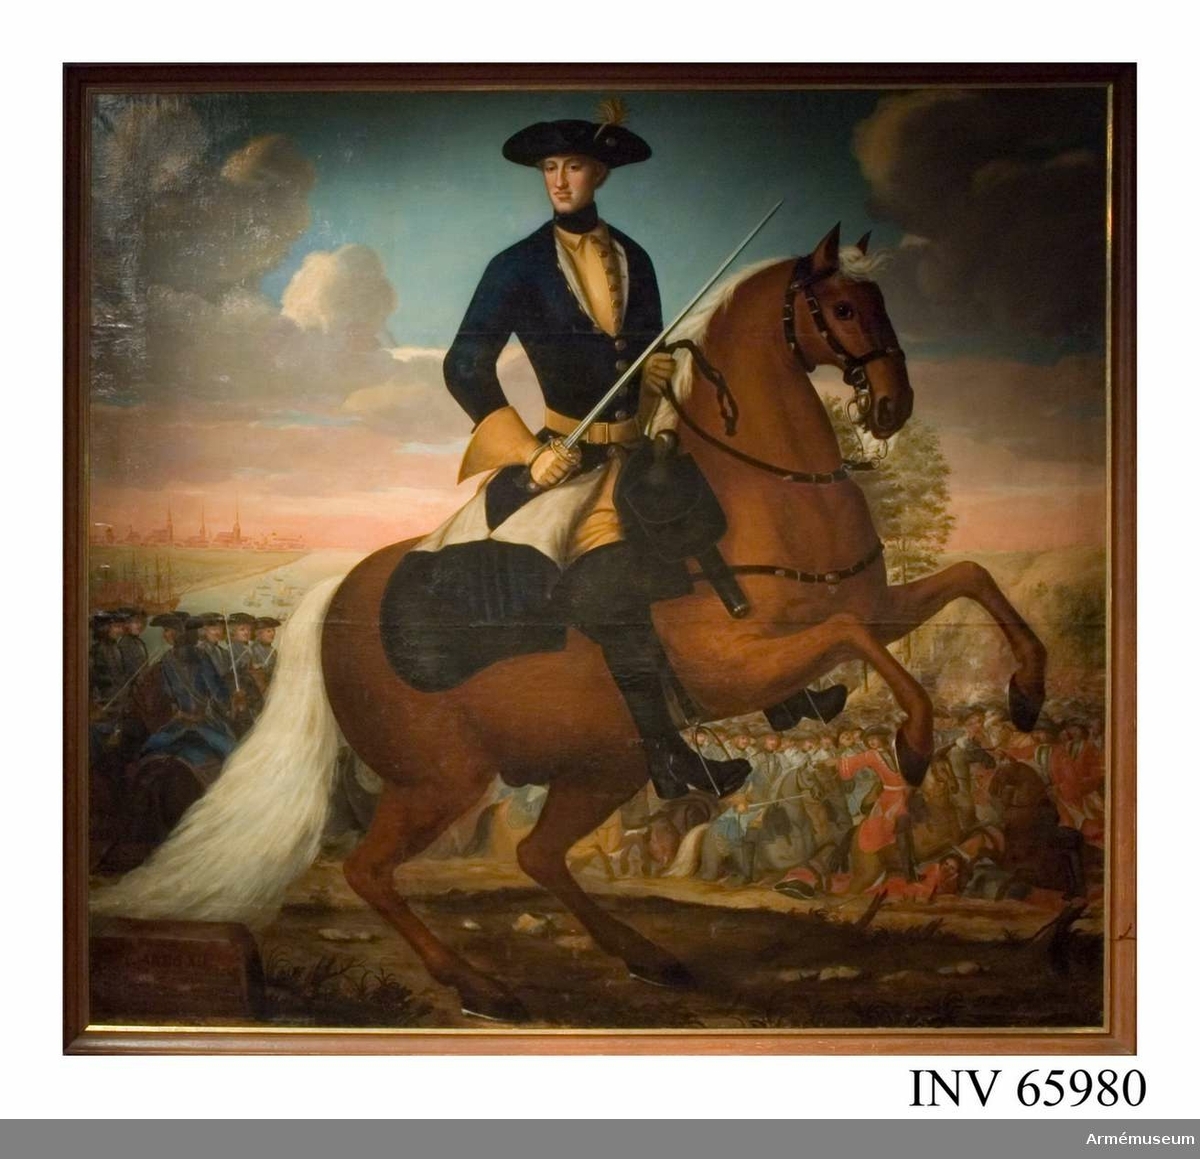 Grupp M I.
Målning signerad av J. H Wedekind föreställande Karl XII till häst i fält.